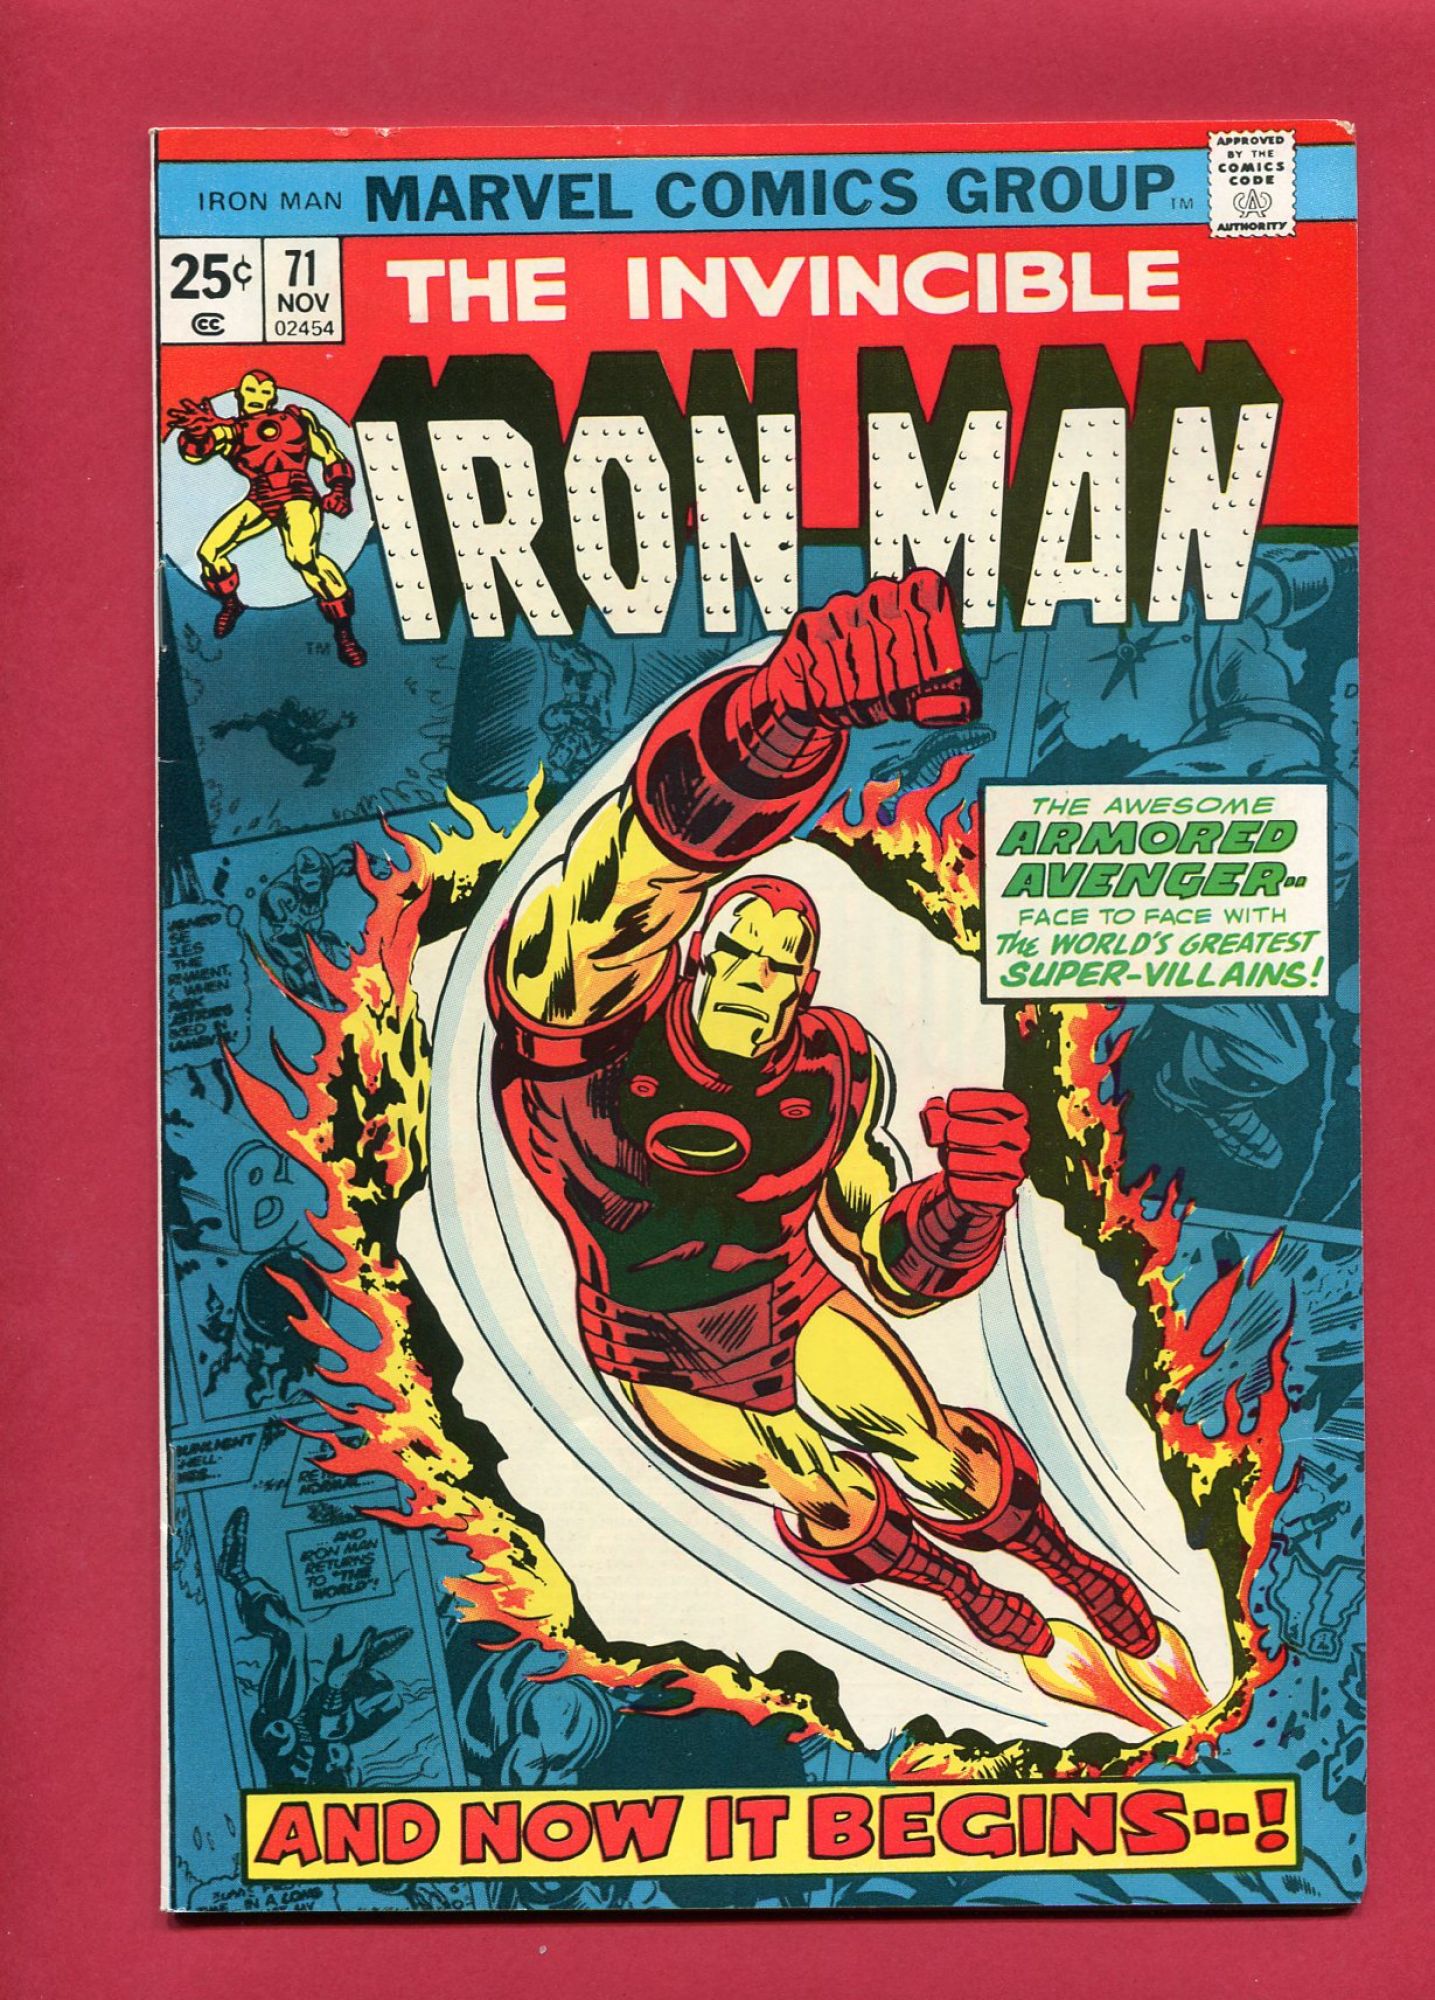 Iron Man #71, Nov 1974, 6.0 FN